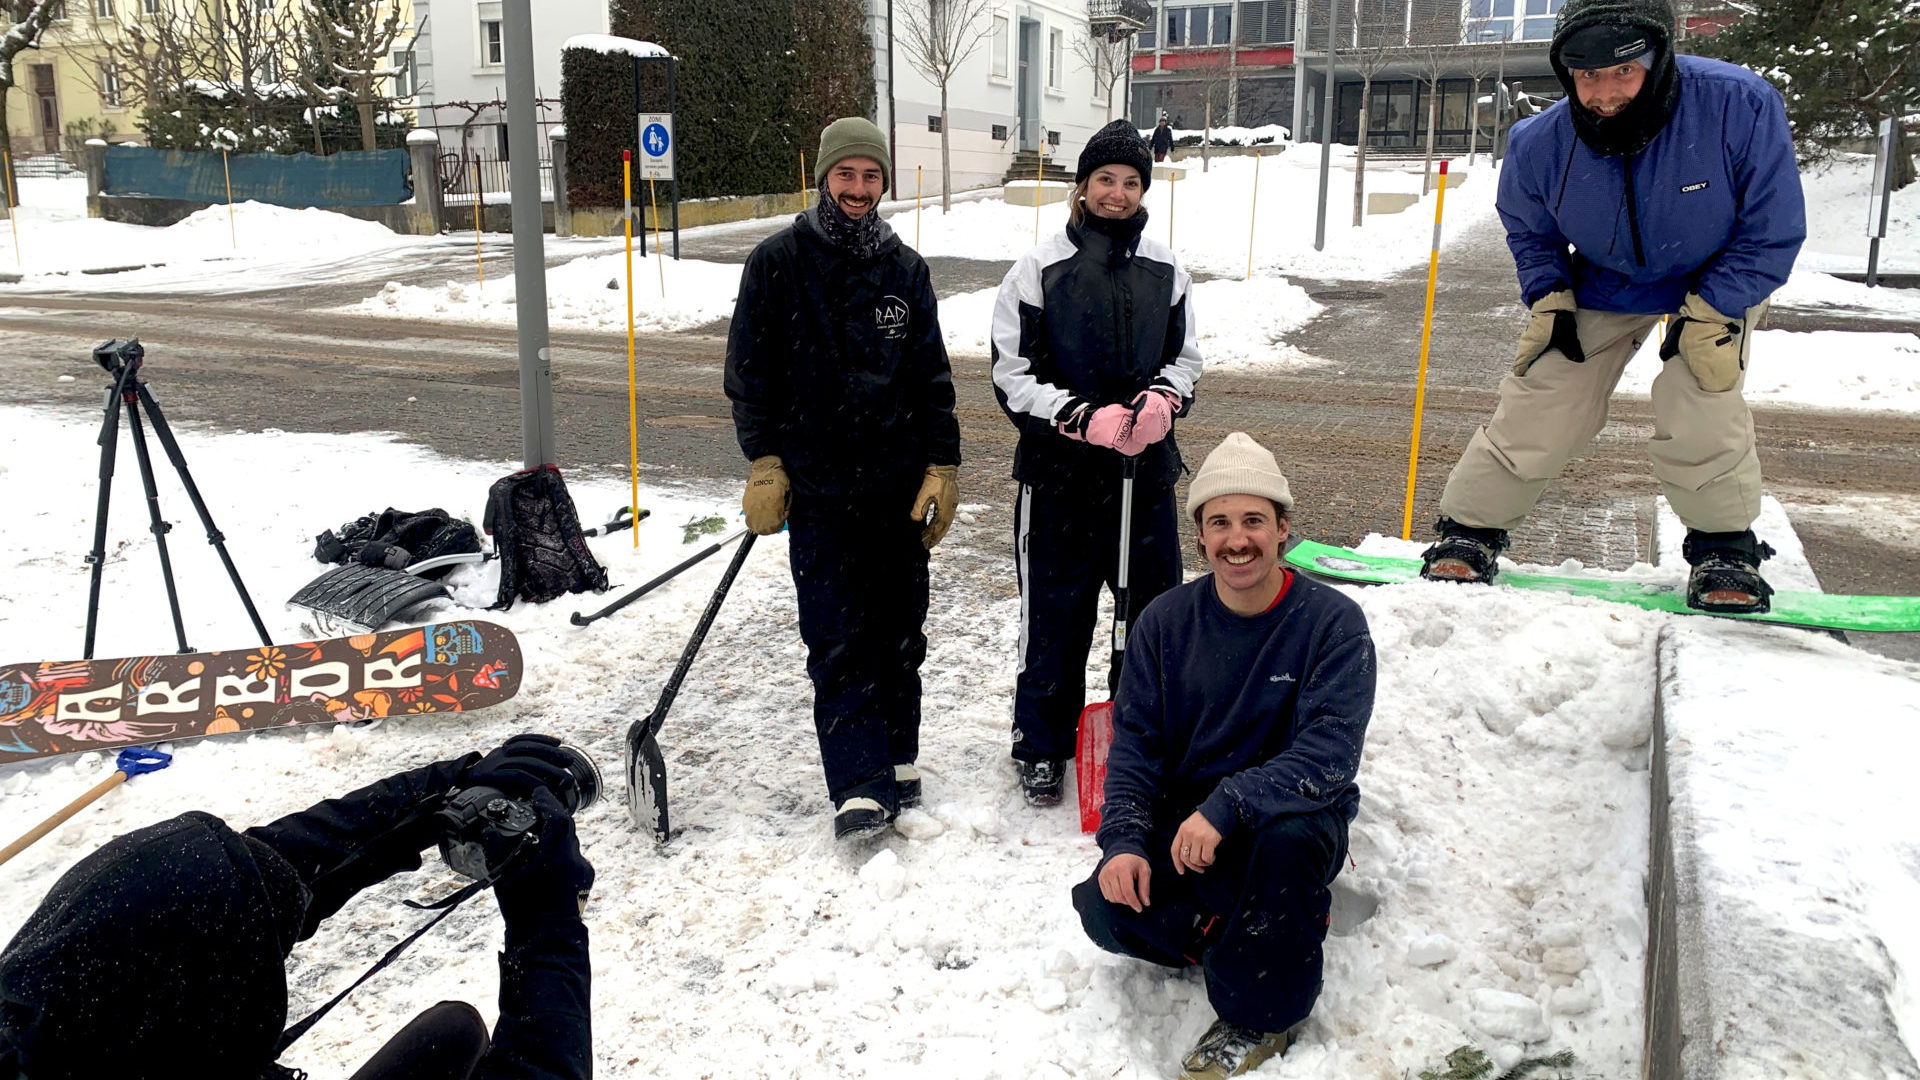 Joues rougies et regards réjouis ! Martina, Arnold, Yannick et Valentin ont tourné leur film dans le damier de l’urbanisme horloger, si propice au street snowboard ! (Photos : gs)